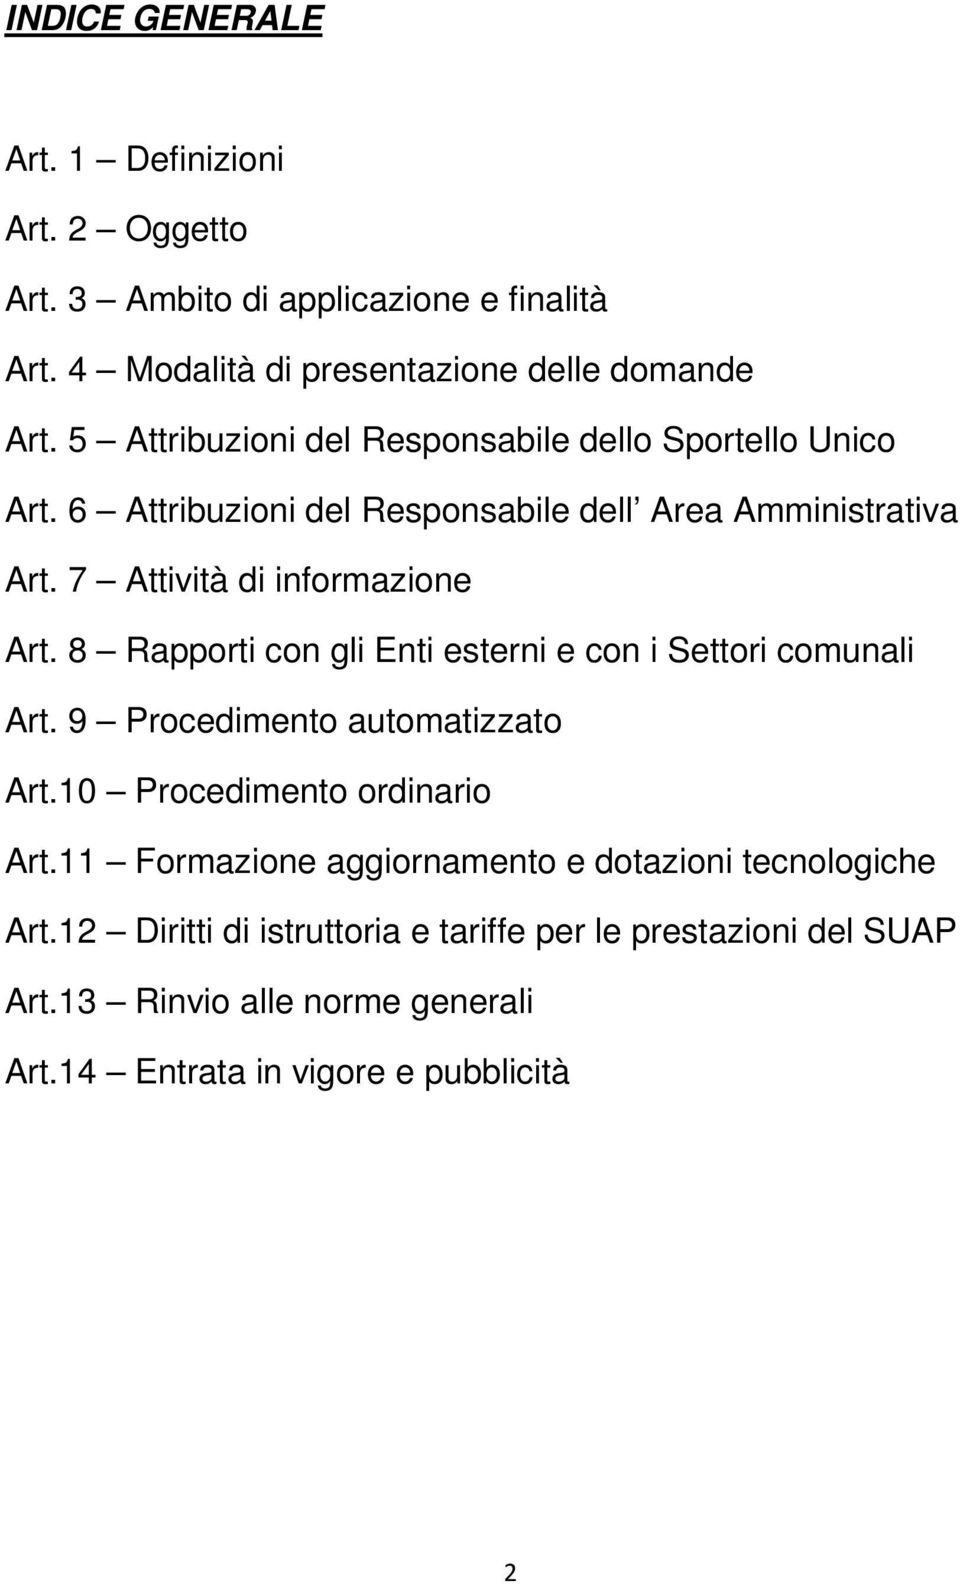 8 Rapporti con gli Enti esterni e con i Settori comunali Art. 9 Procedimento automatizzato Art.10 Procedimento ordinario Art.